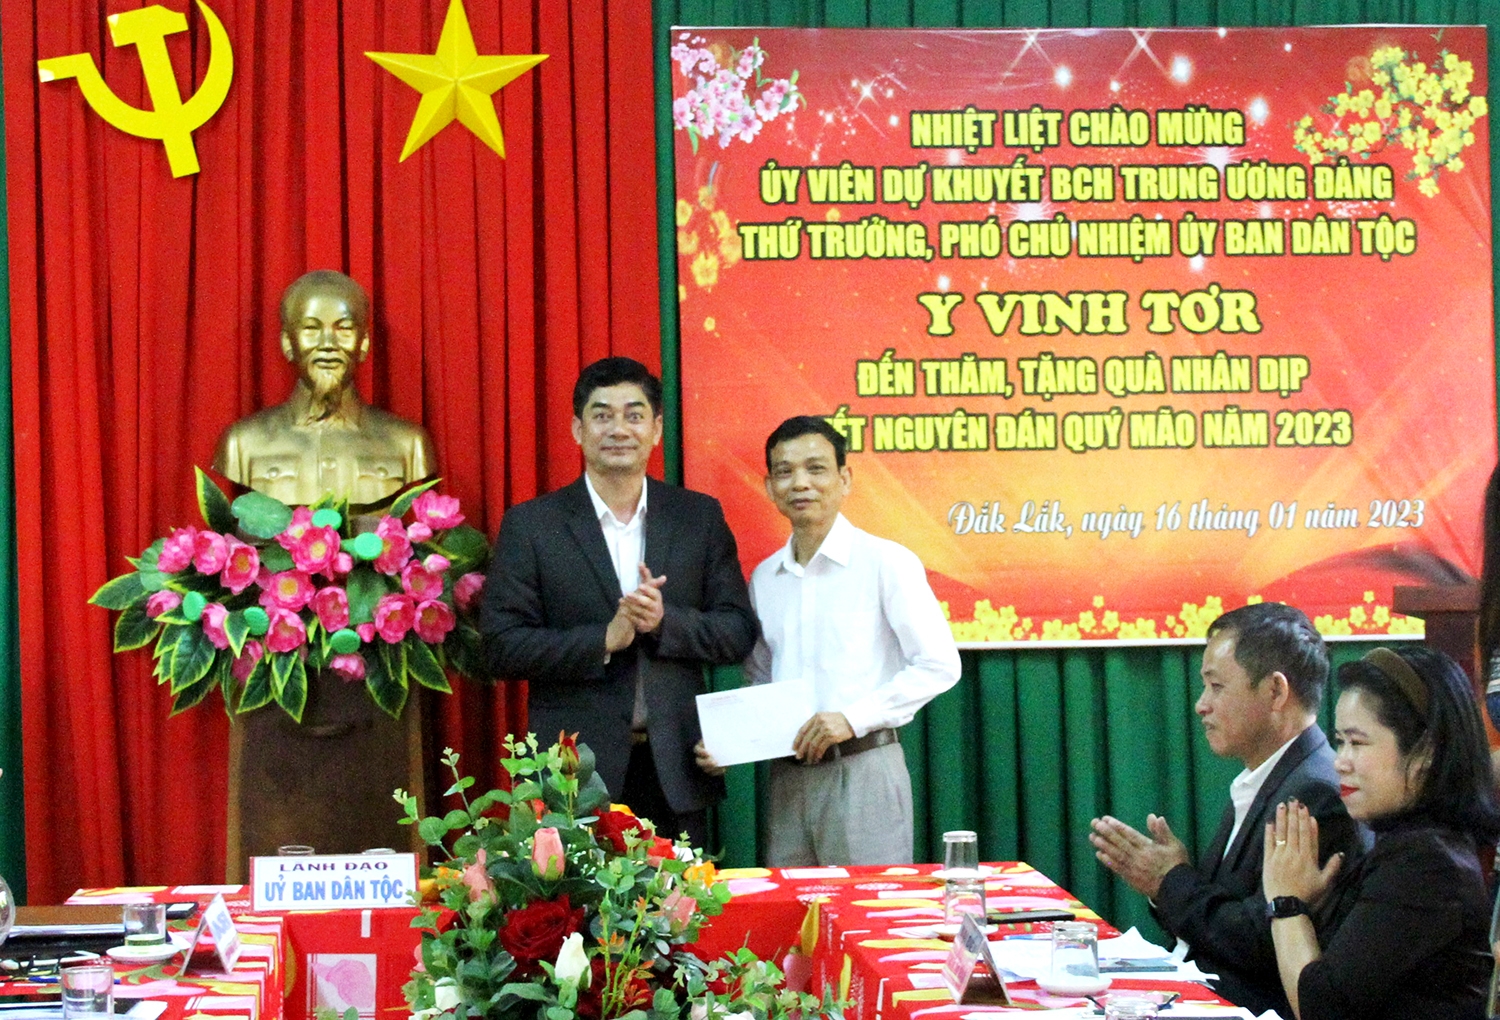 Thay mặt Đoàn công tác, Thứ trưởng, Phó Chủ nhiệm Ủy ban Dân tộc Y Vinh Tơr trao quà cho Ban Giám hiệu Nhà trường